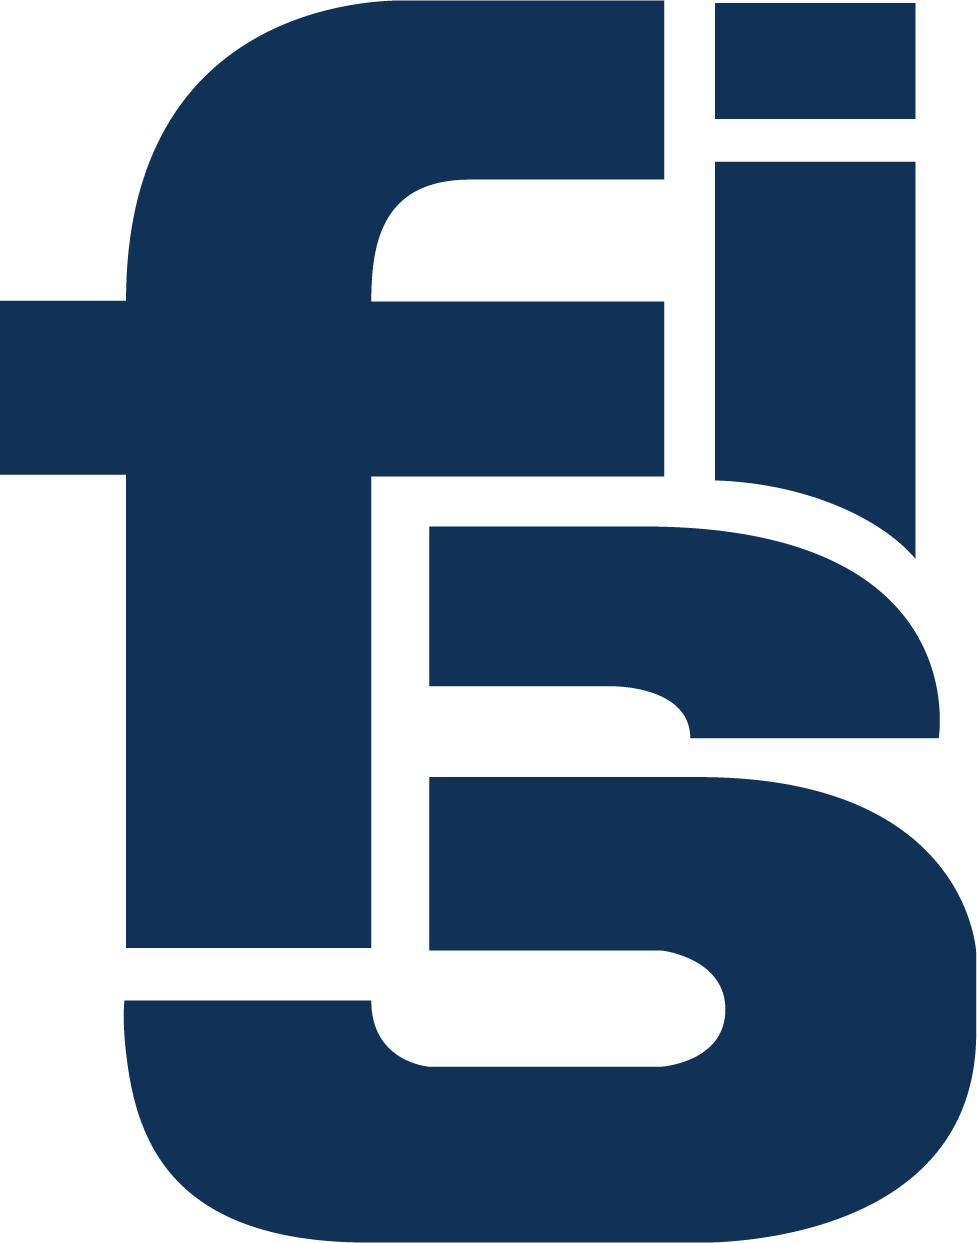 FSI: A Global Polyurethane Systems House